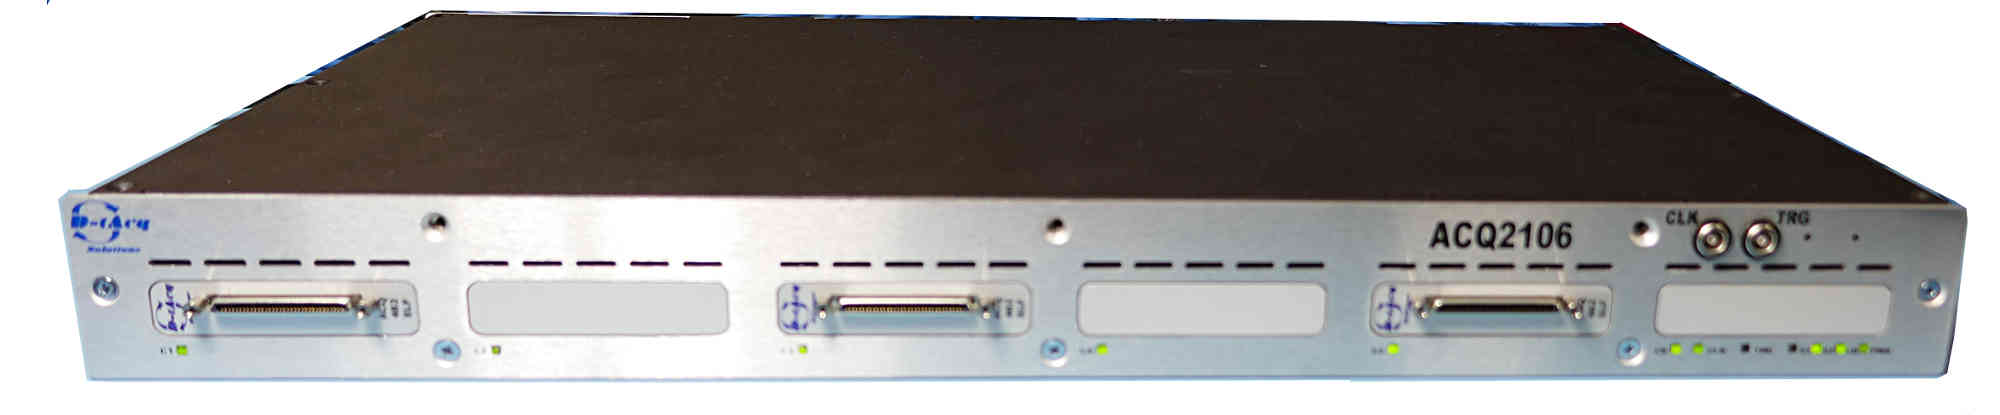 ACQ2106 front panel, 48 channels